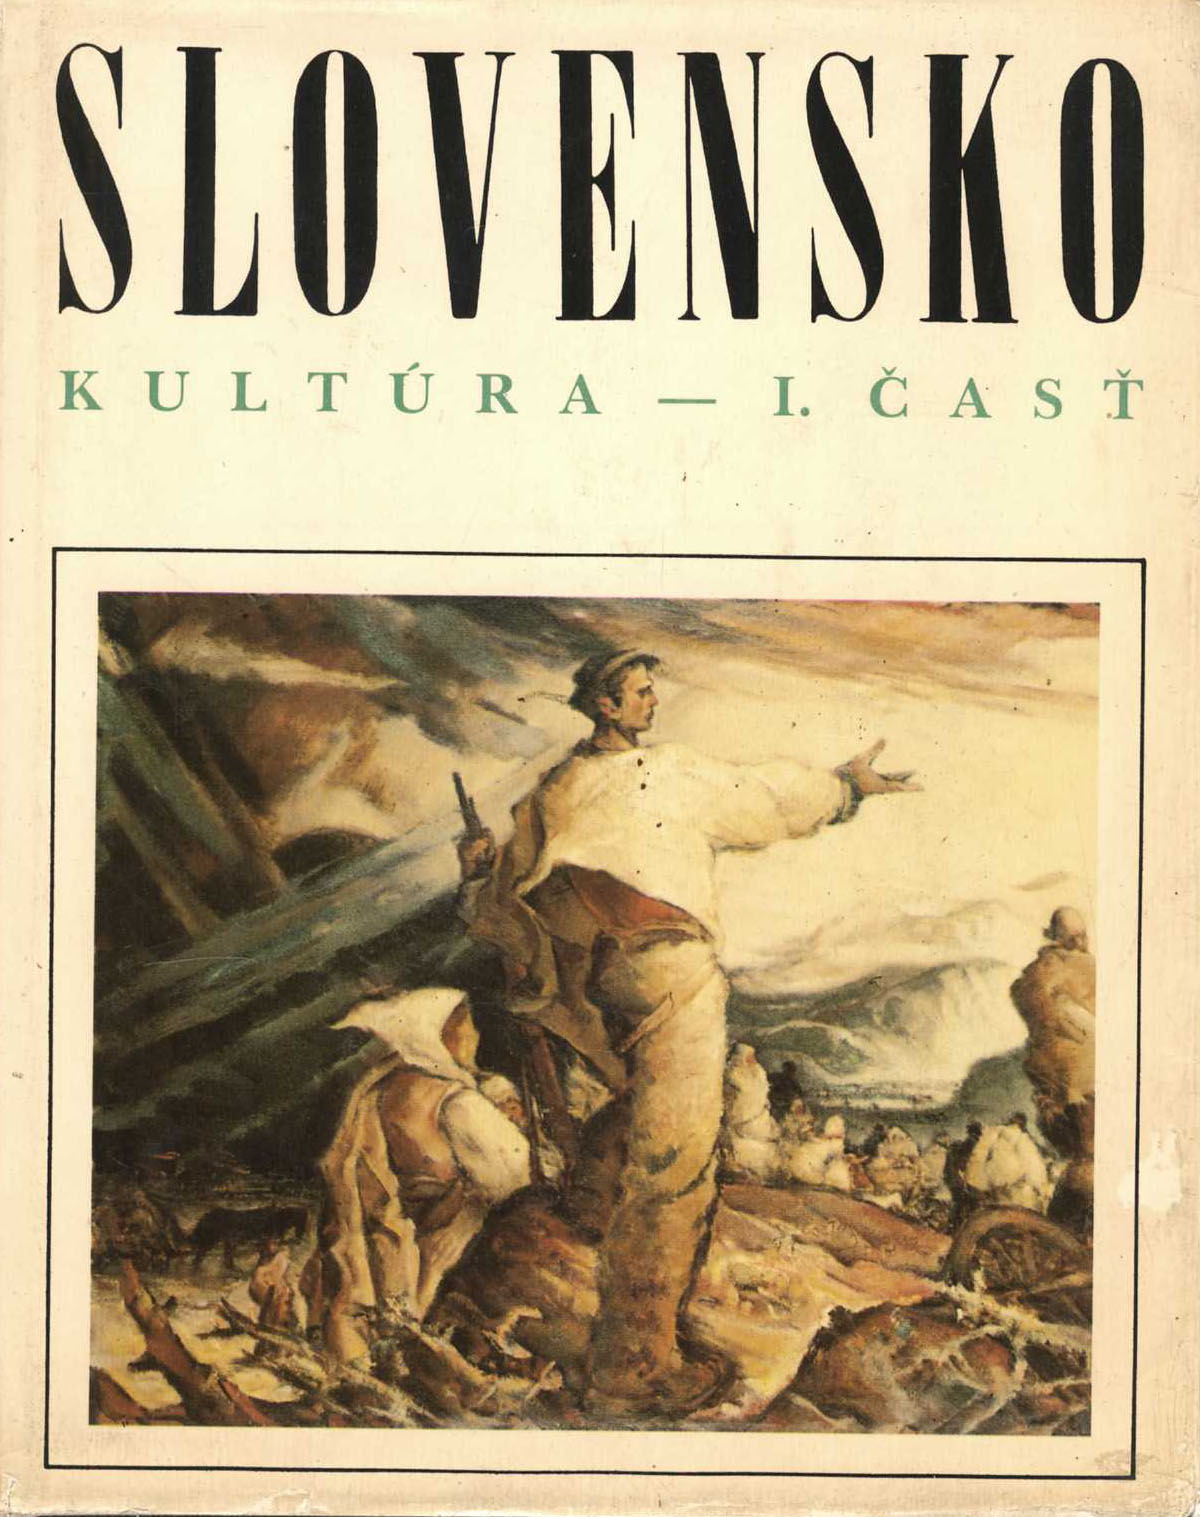 Slovensko 4 Kultúra - I. časť